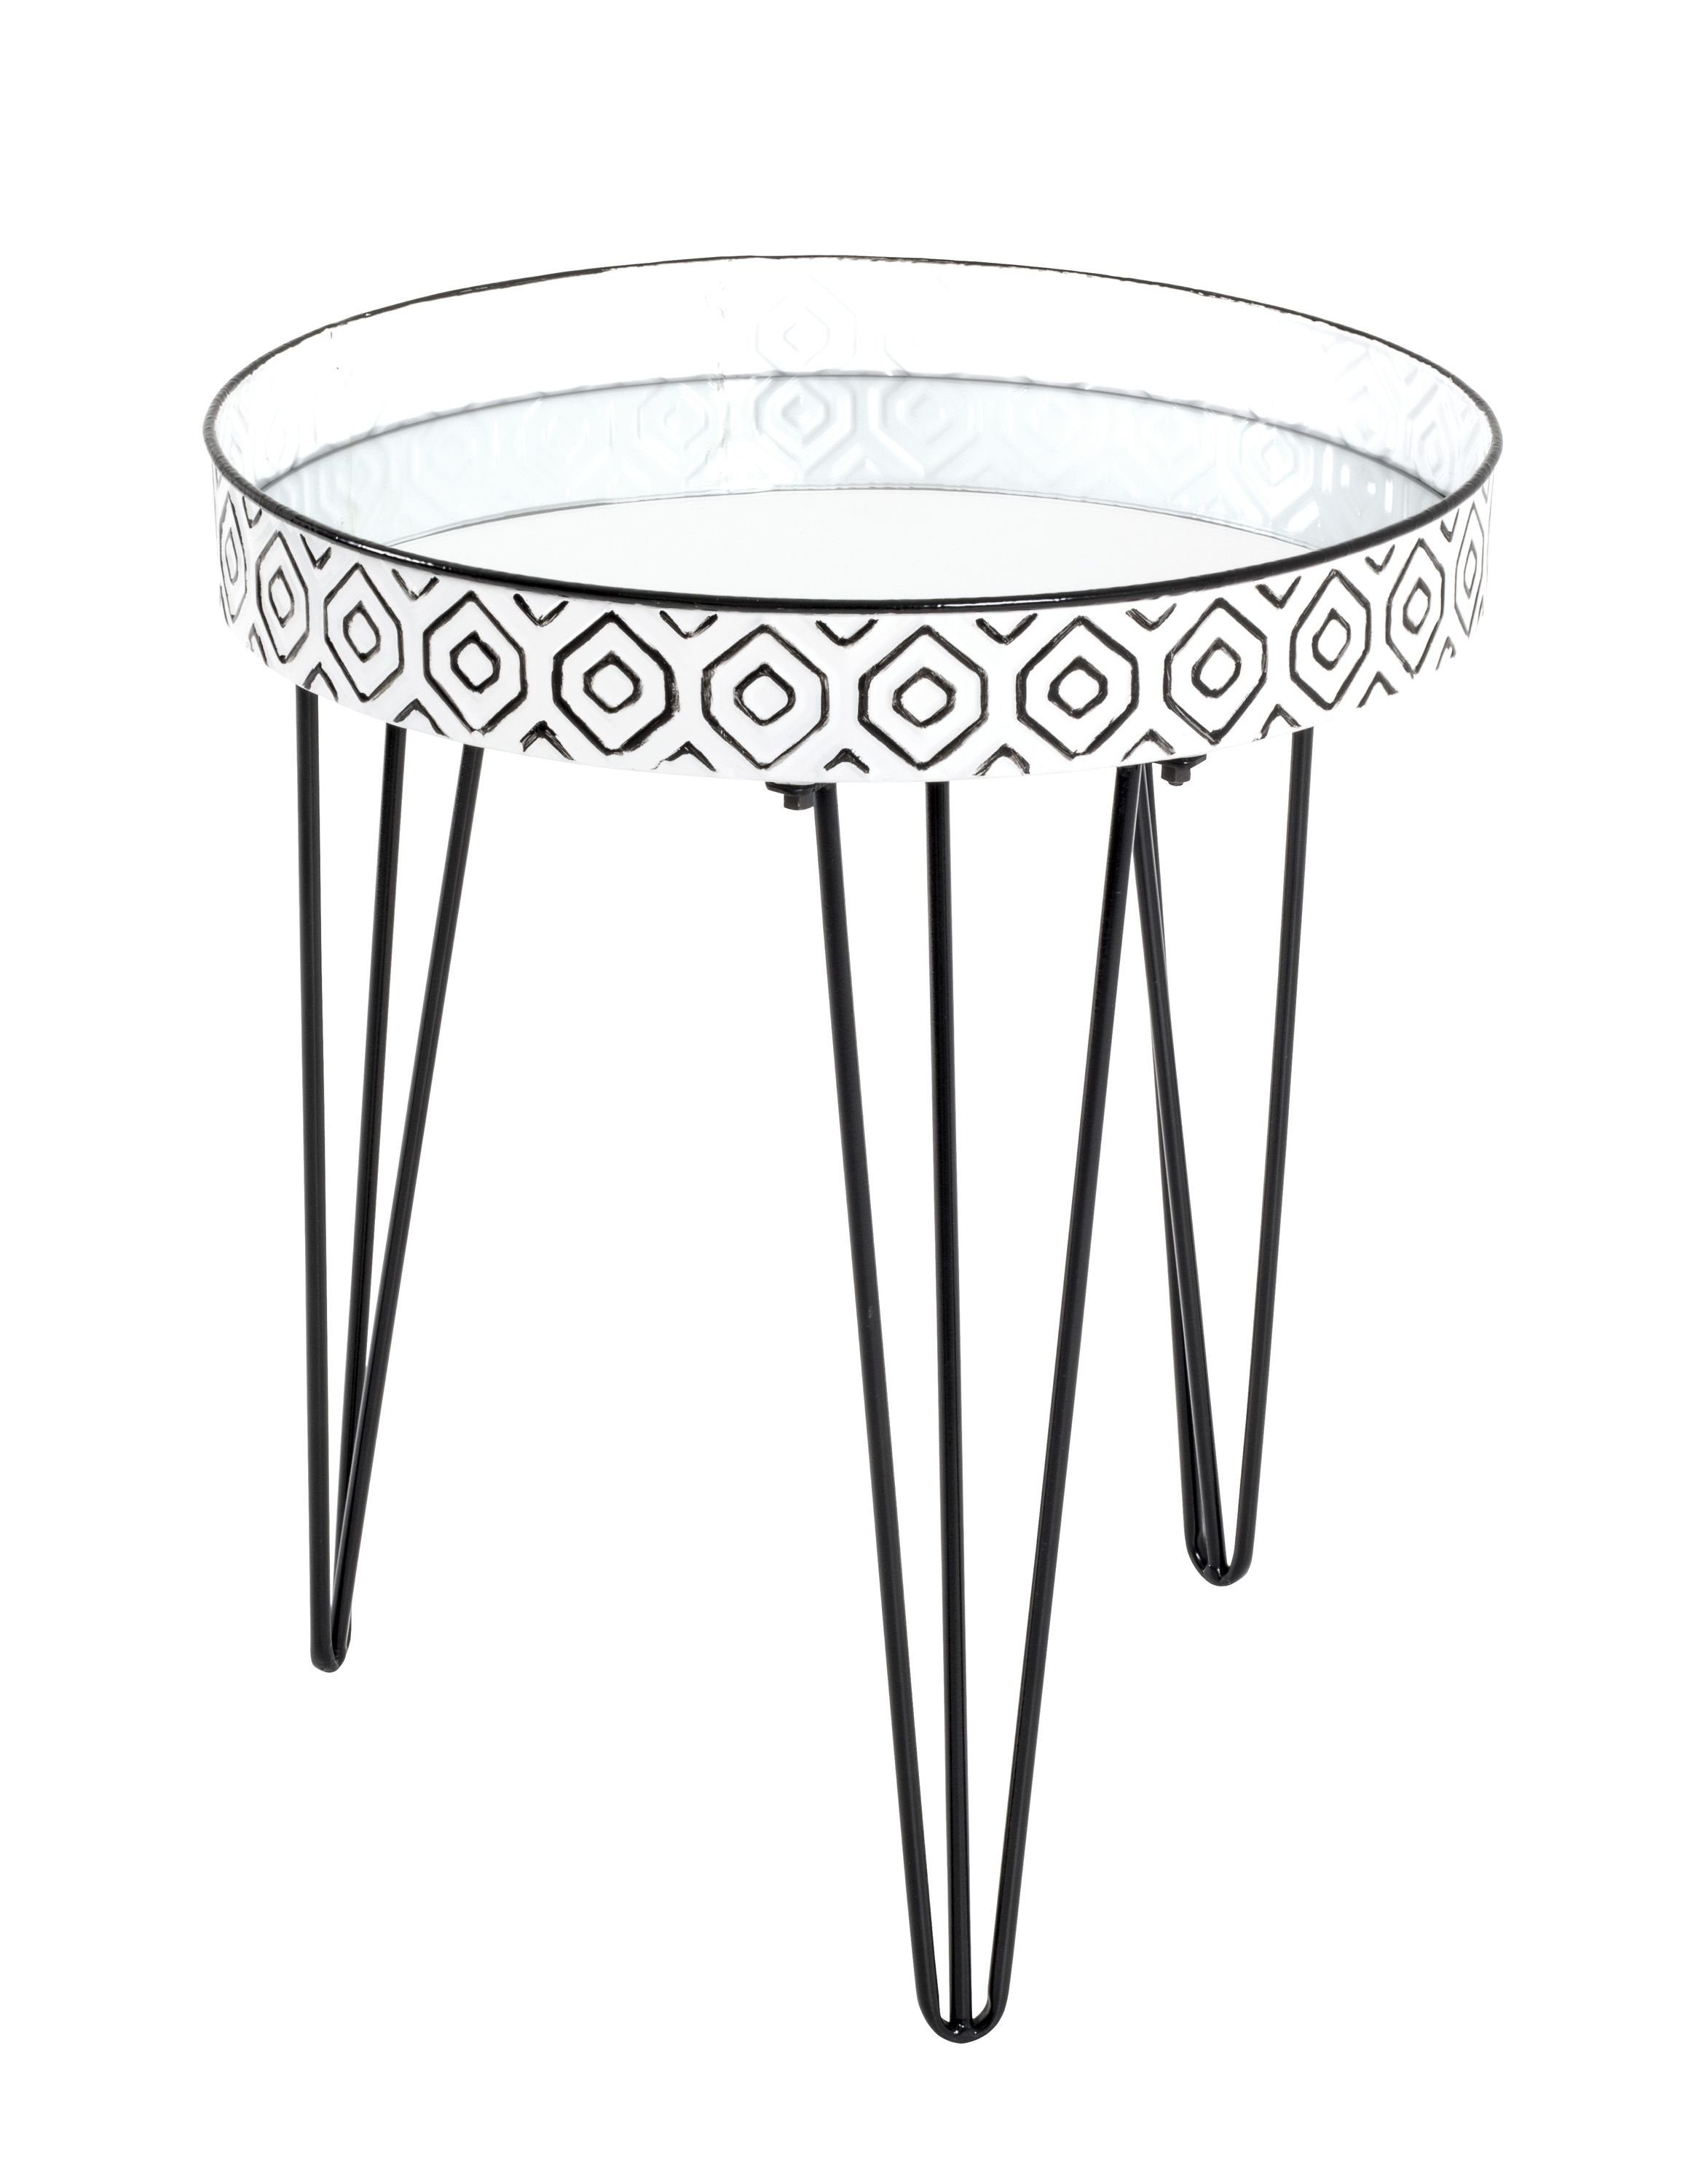 HAKU Beistelltisch Beistelltisch, HAKU Möbel Beistelltisch schwarz-weiß (DH 45x53 cm) DH 45x53 cm